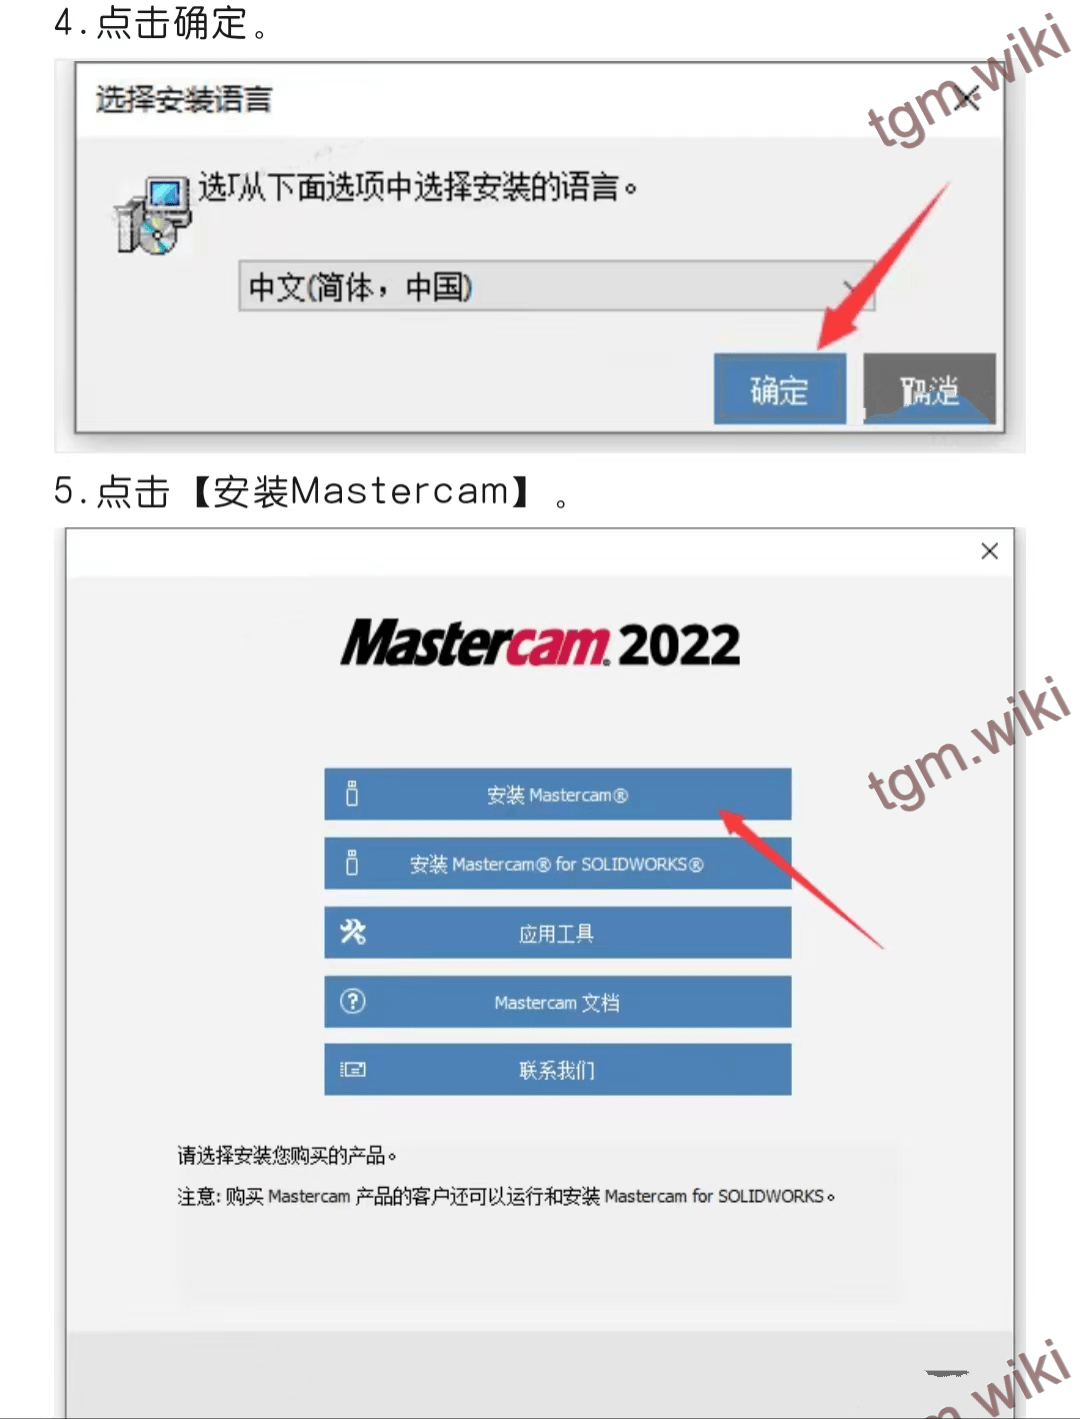 【适用型CAD/CAM设想辅助软件】Mastercam 2022最新详细安拆步调